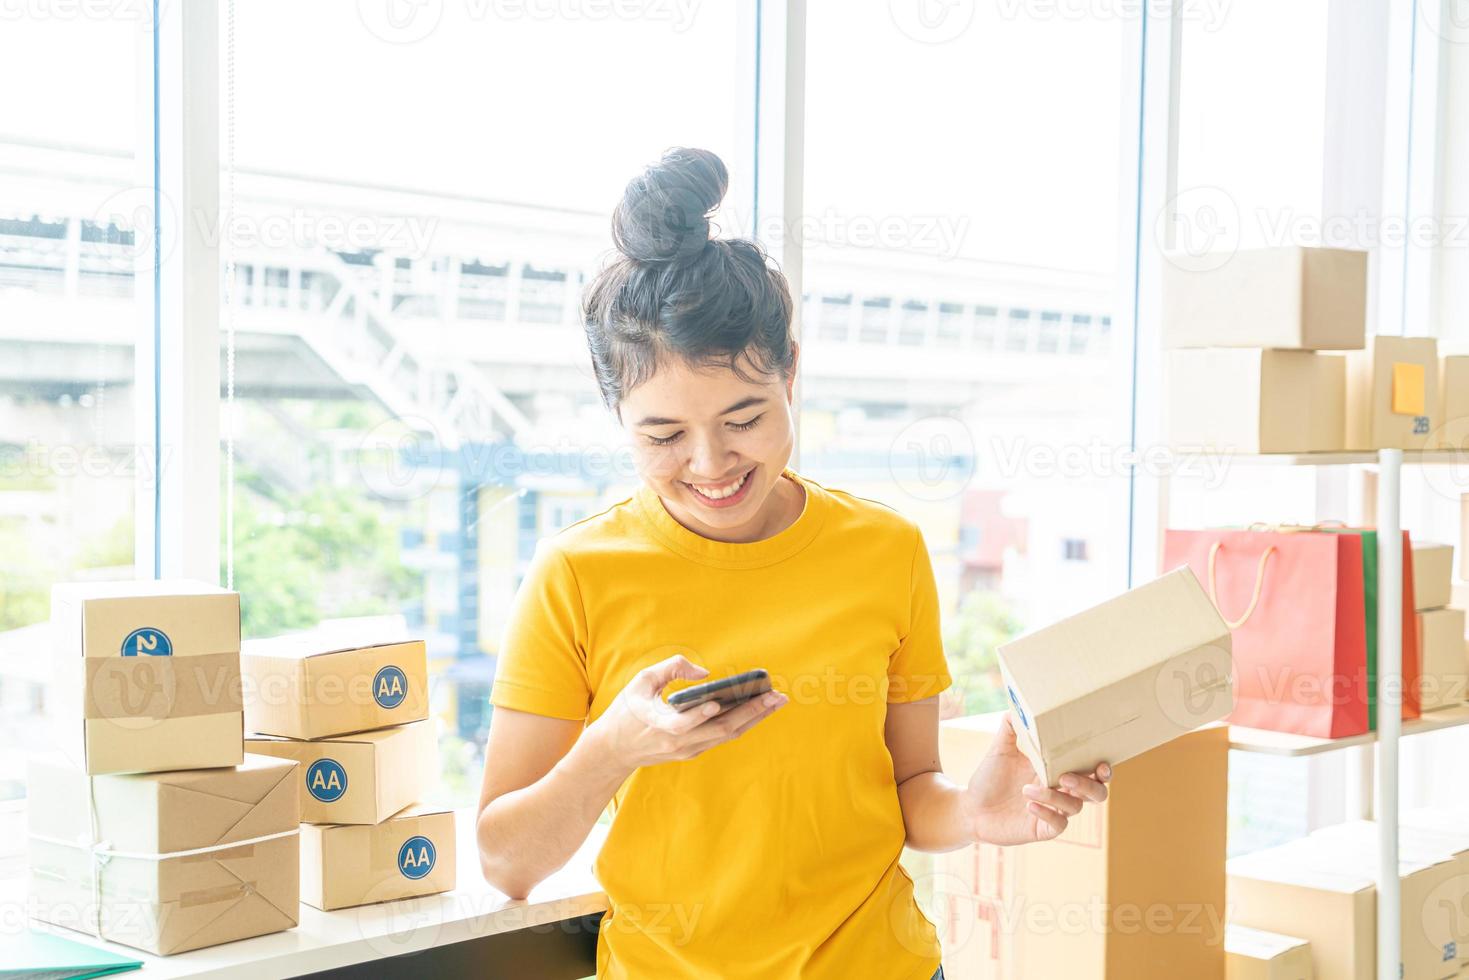 Mujer asiática propietaria de una empresa que trabaja en casa con una caja de embalaje en el lugar de trabajo - emprendedor pyme de compras en línea o concepto de trabajo independiente foto